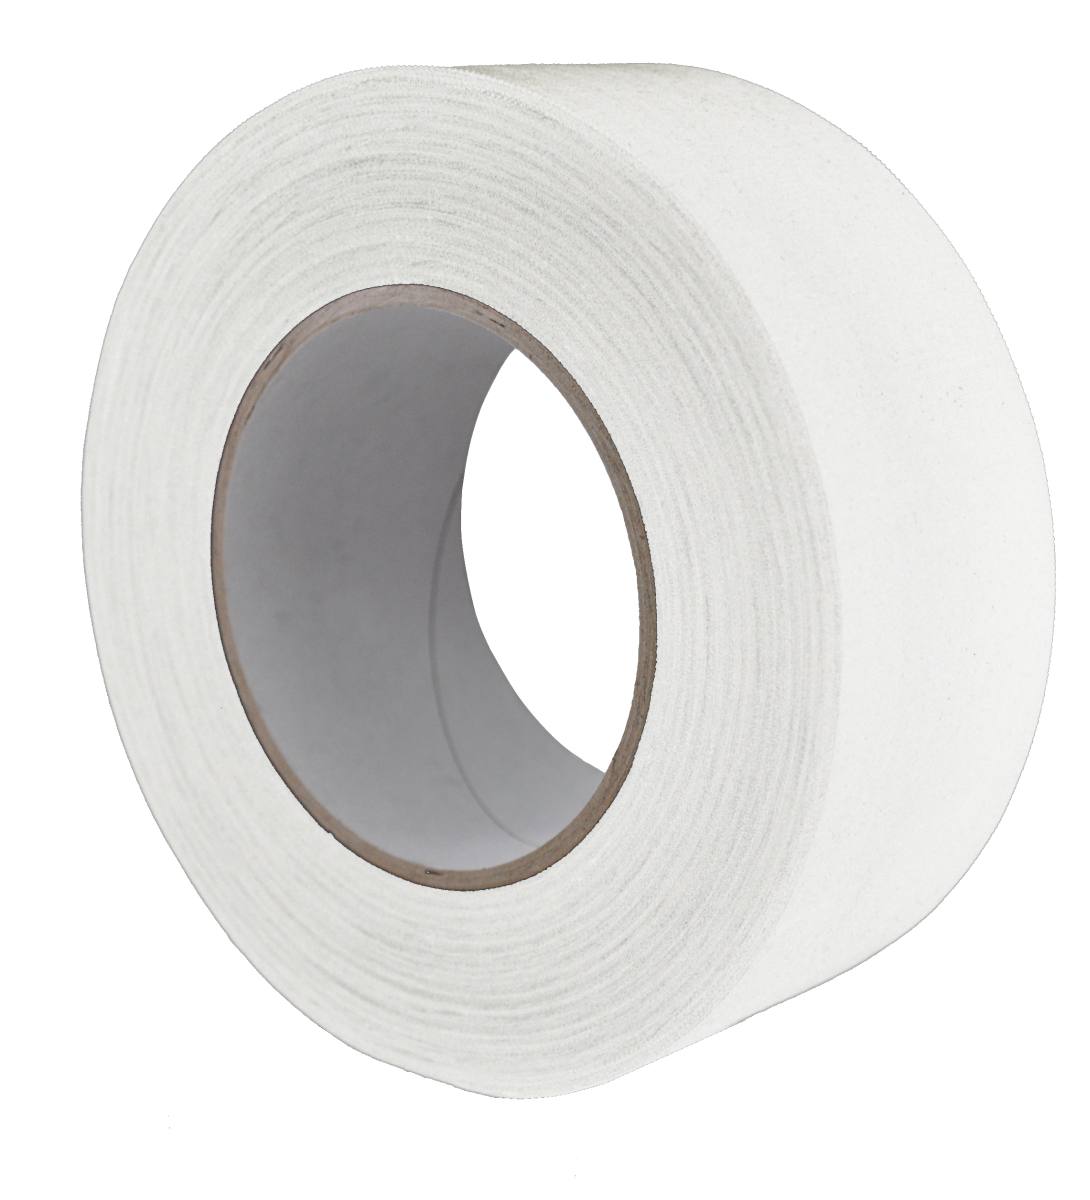 S-K-S 970 Raw fabric adhesive tape, 19 mm x 50 m, white, 0.240 mm